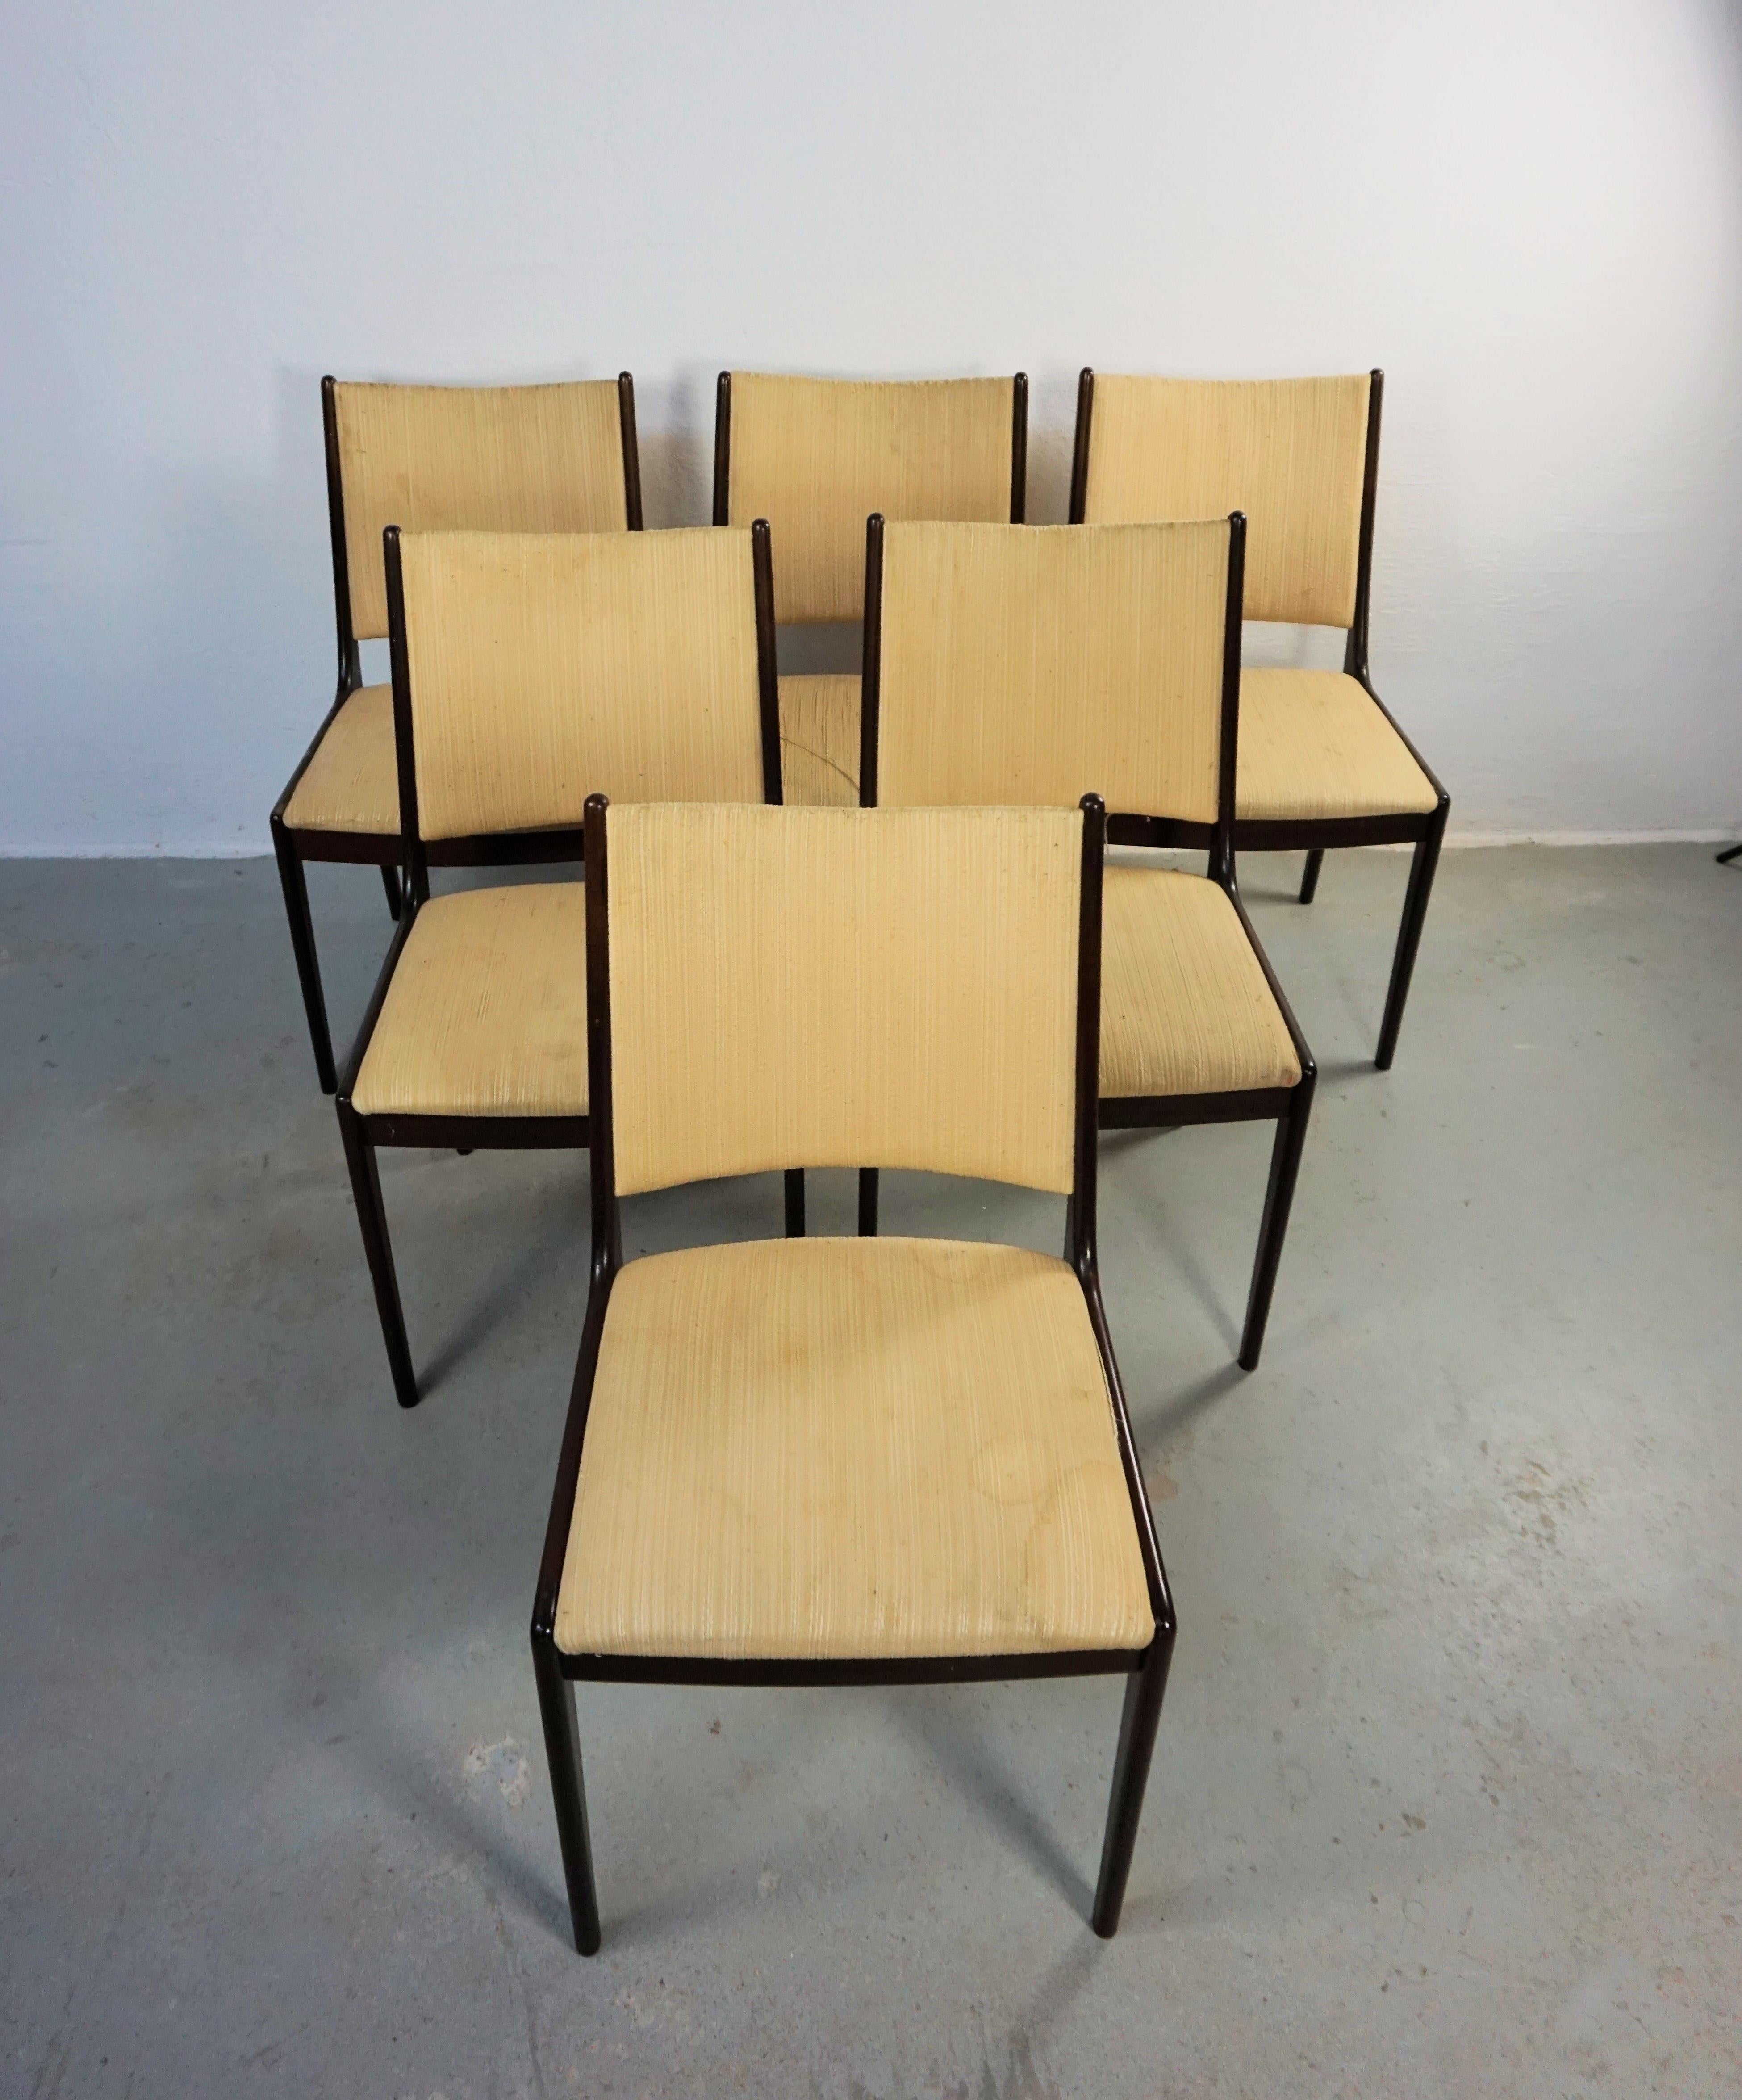 Ensemble de six chaises de salle à manger Johannes Andersen des années 1960 en acajou, restaurées, fabriquées par Uldum Møbler, Danemark, y compris un rembourrage personnalisé.

L'ensemble de chaises de salle à manger présente un design simple et